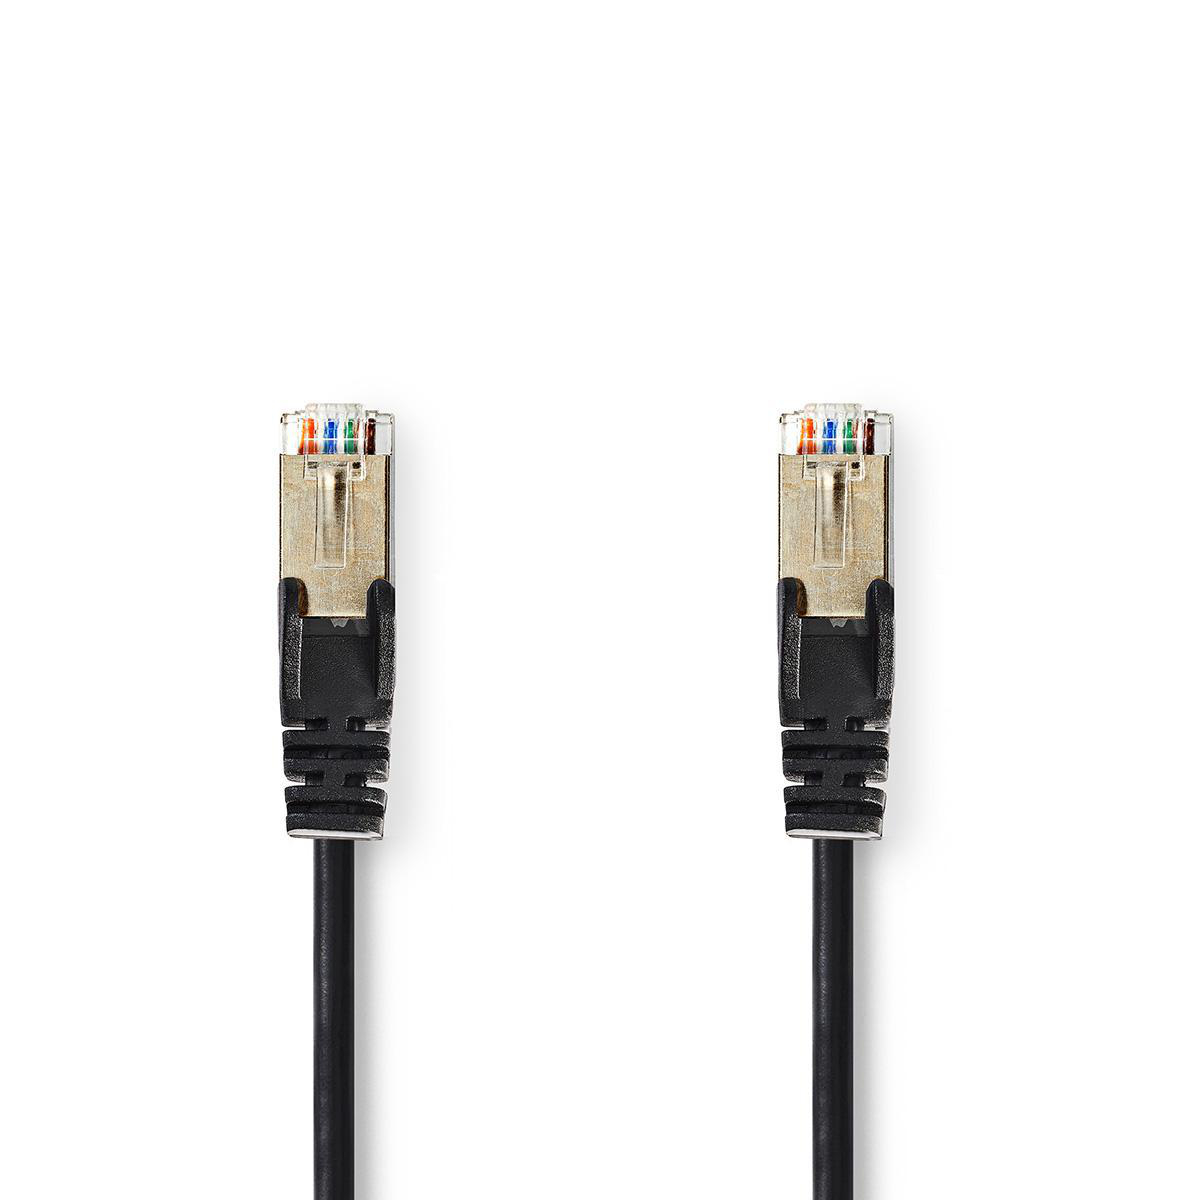 Nedis síťový kabel SF/UTP CAT5e, zástrčka RJ45 - zástrčka RJ45, 5 m, černá (CCGP85121BK50)